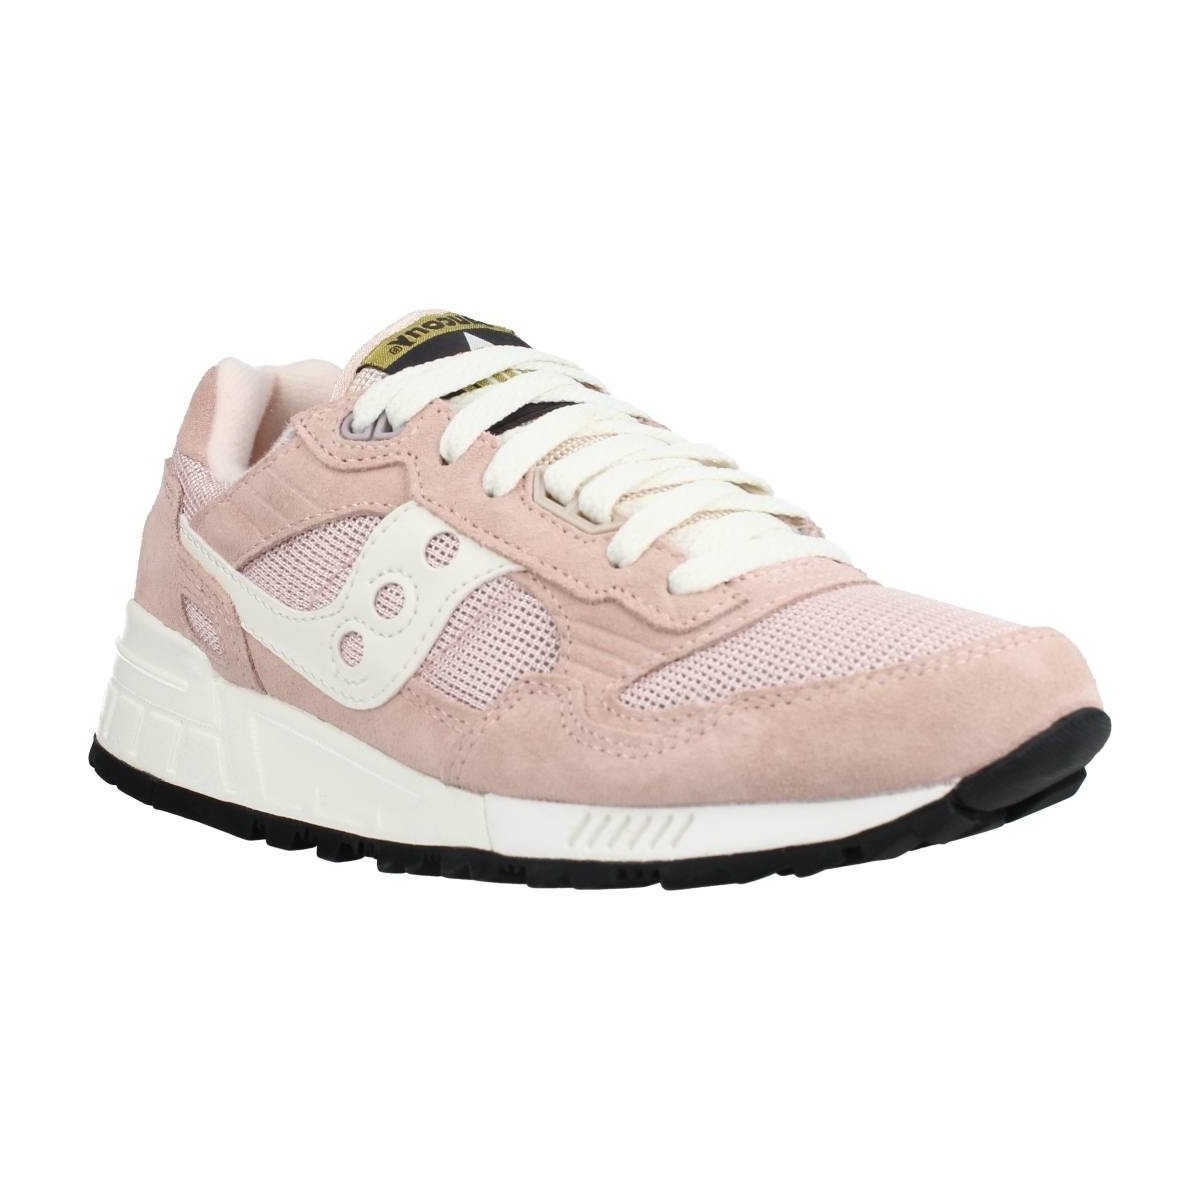 Pantofi Femei Sneakers Saucony SHADOW 5000 roz